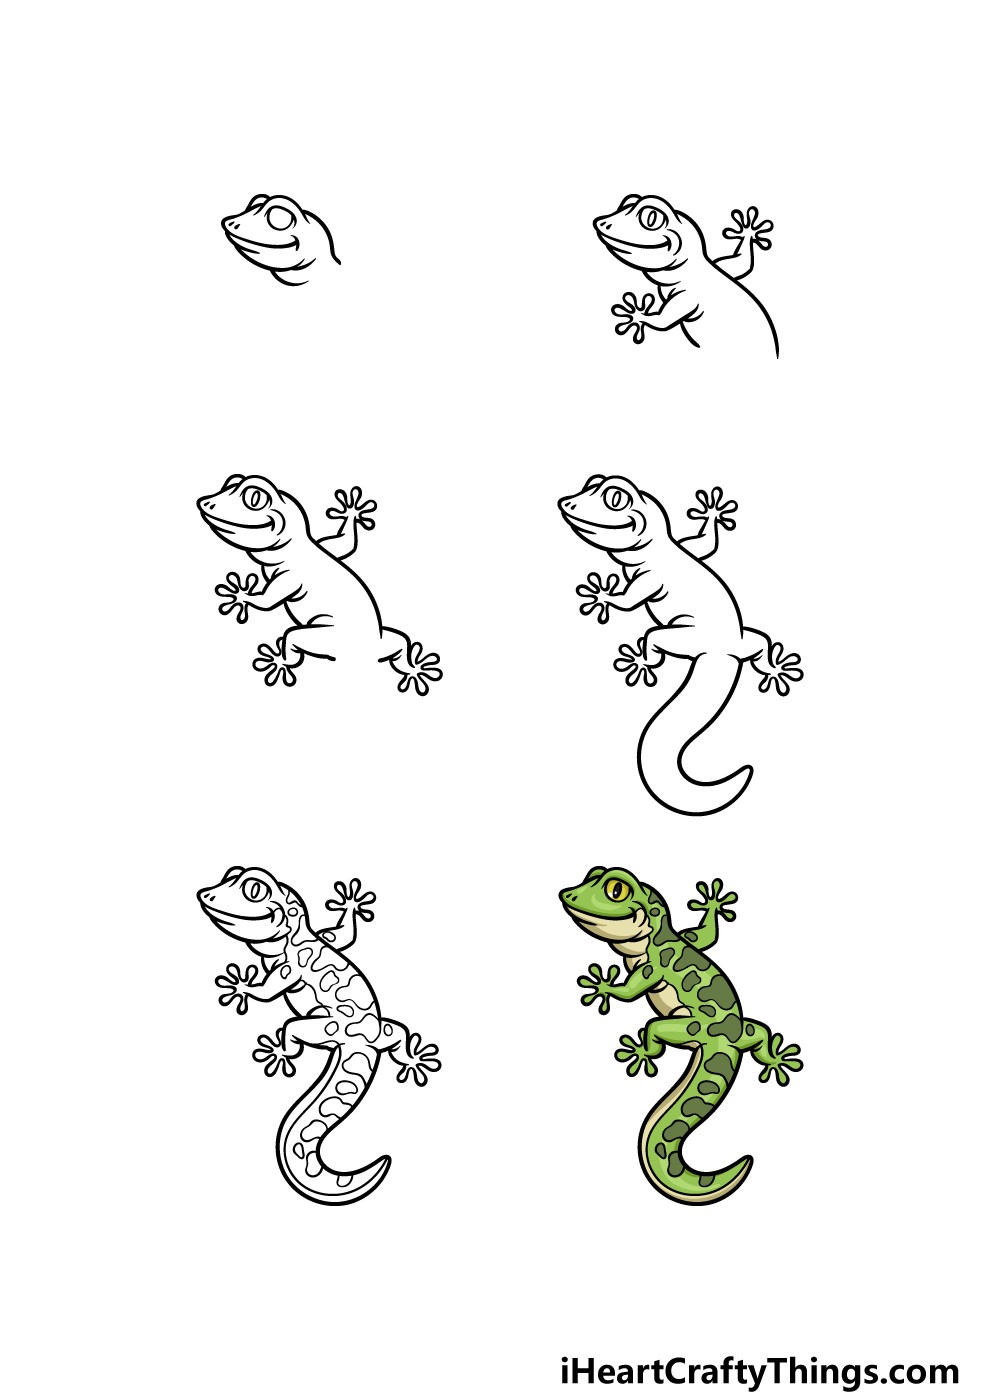 A cute Gecko Drawing Ideas